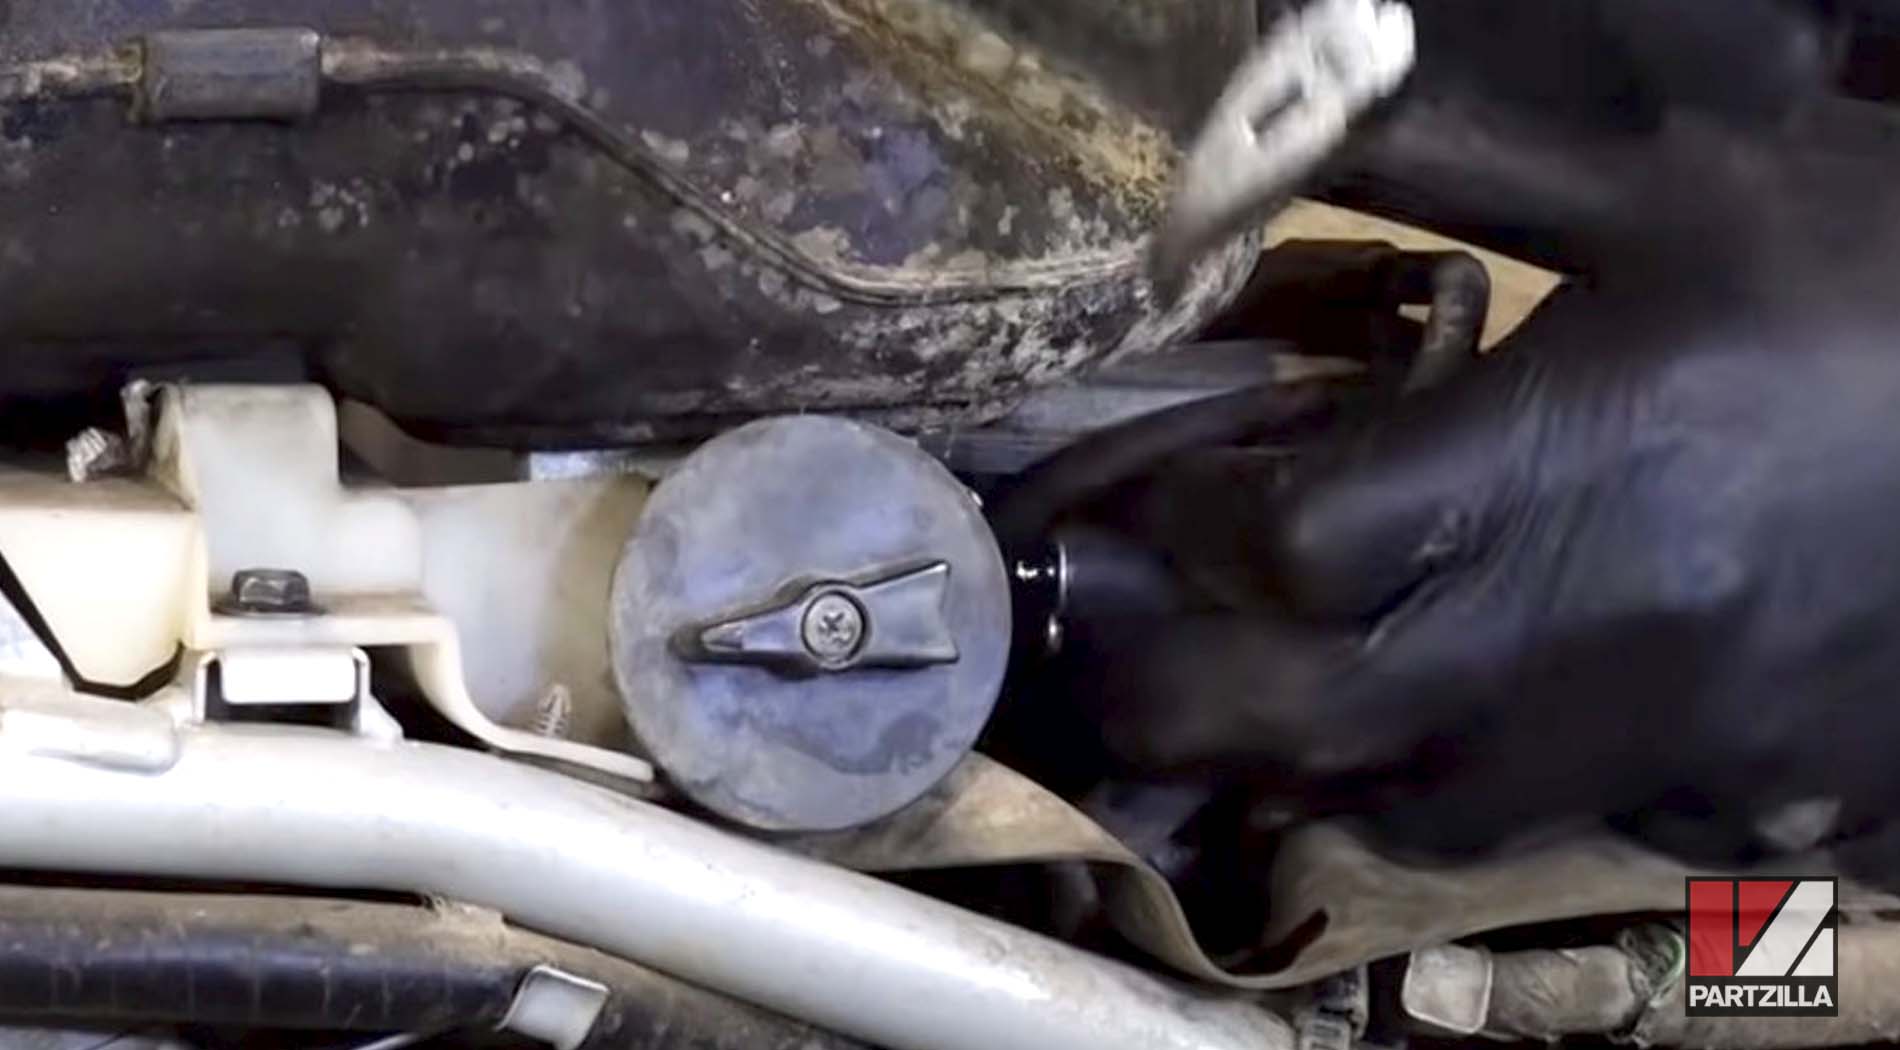 Honda TRX400 ATV carburetor clean and rebuild